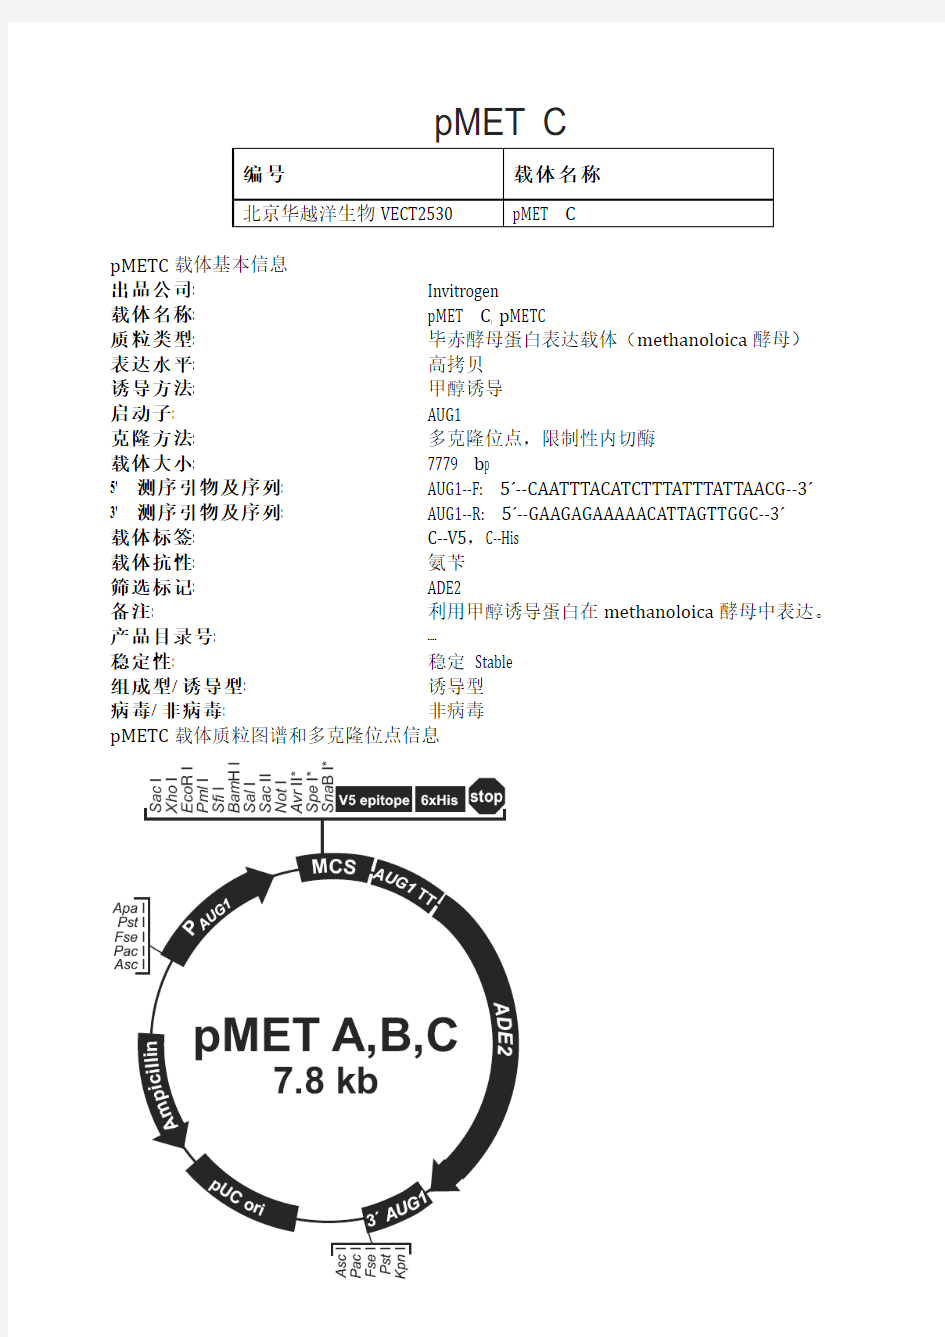 pMET C酵母表达载体说明